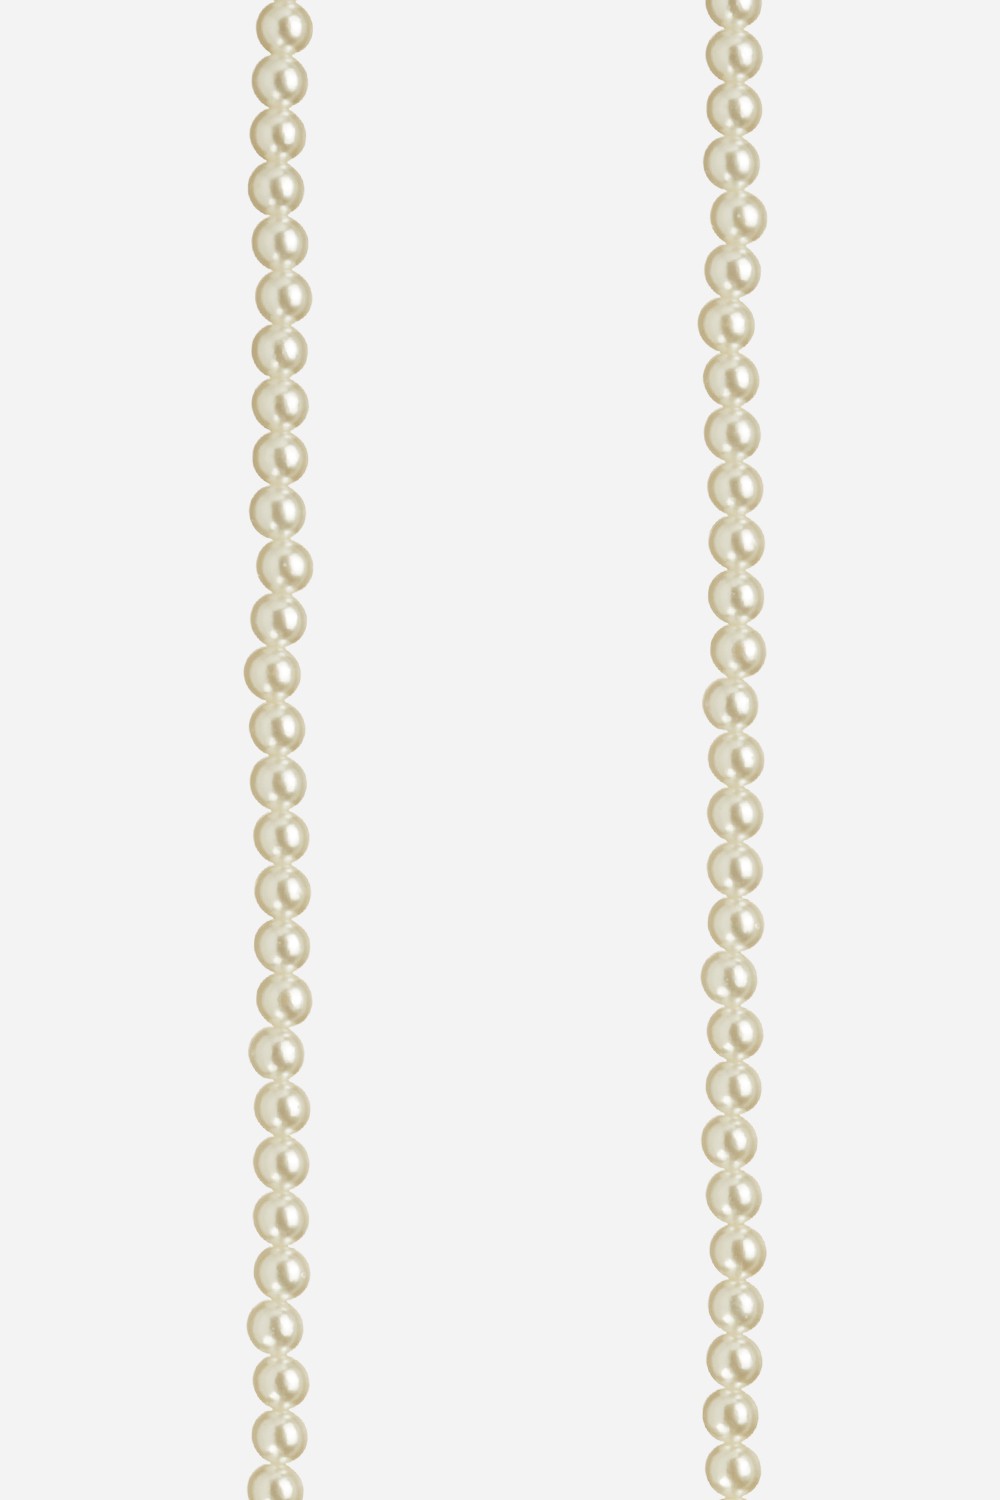 Long White Agathe Chain 120 cm